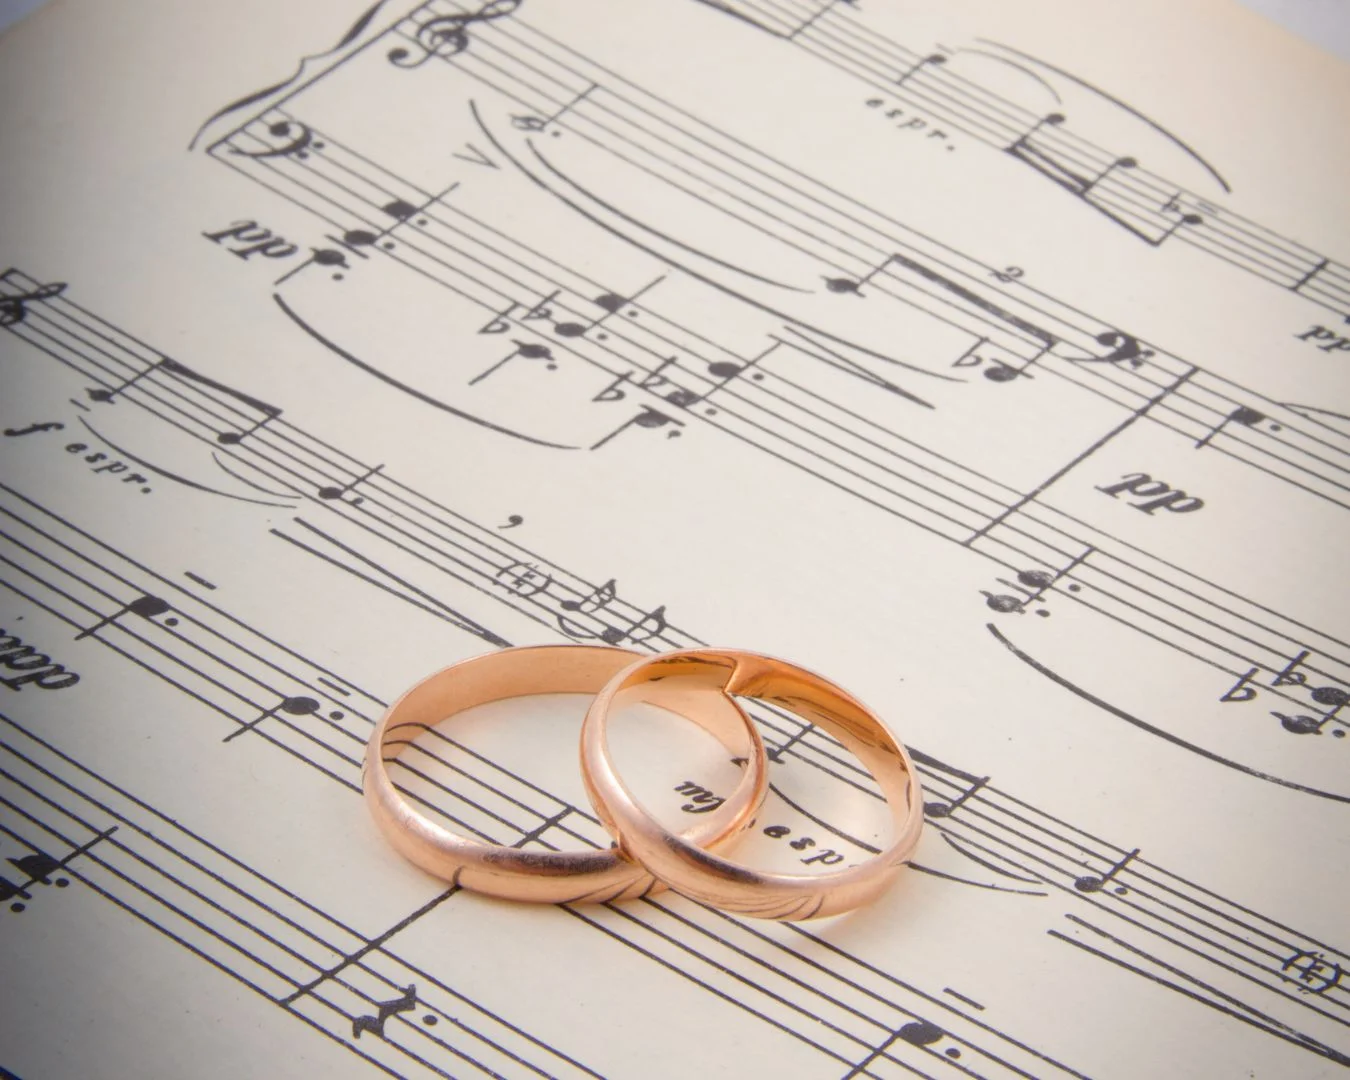 Músicas para festa de casamento: dicas e playlist completa  Músicas para  cerimônia de casamento, Musicas para casamento, Música de casamento